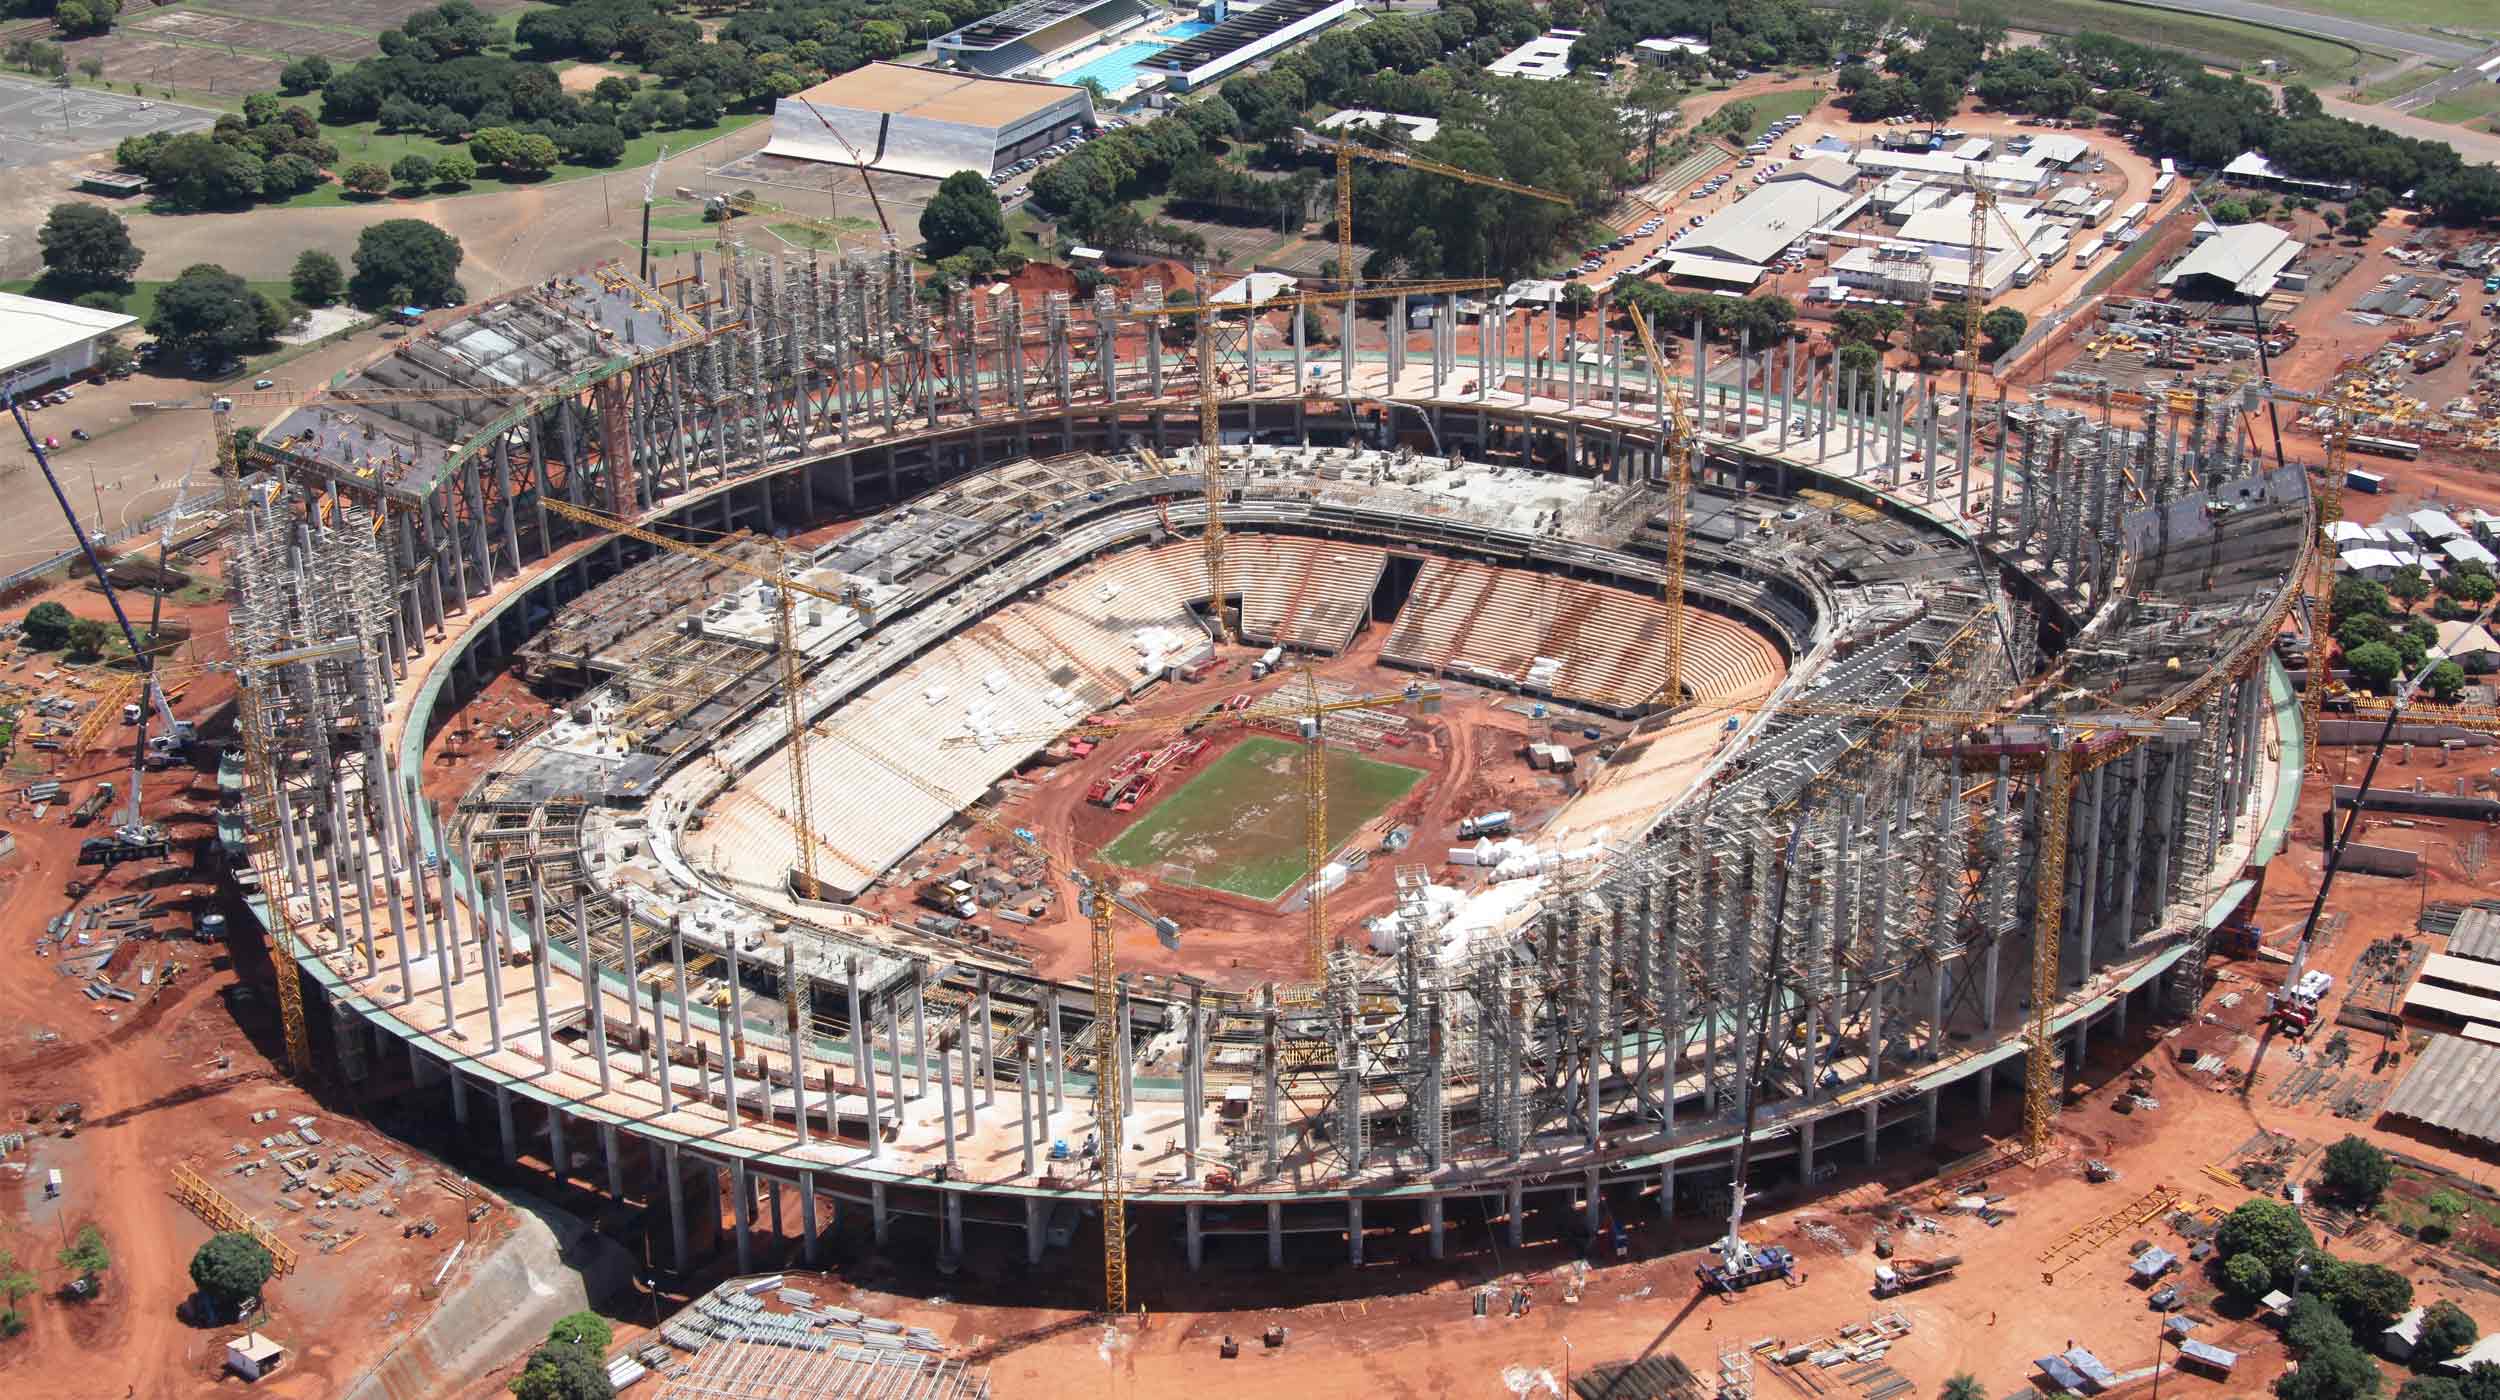 Mais conhecido como Mané Garrincha, será uma das principais sedes da Copa do Mundo de Futebol de 2014.